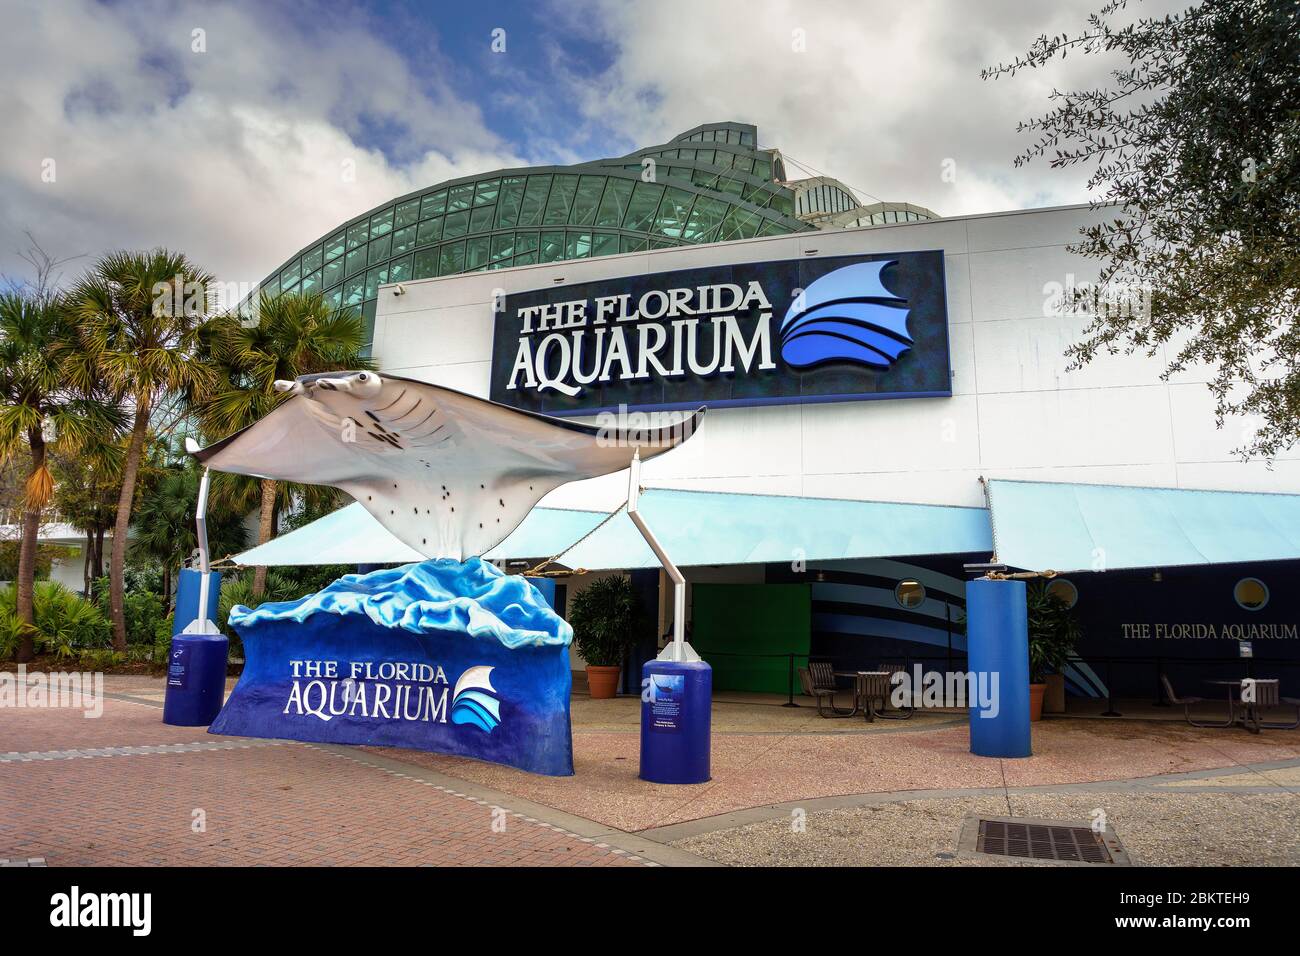 Larga manta ray sculpture at the entrance to the Florida Aquarium in Tampa Bay Stock Photo